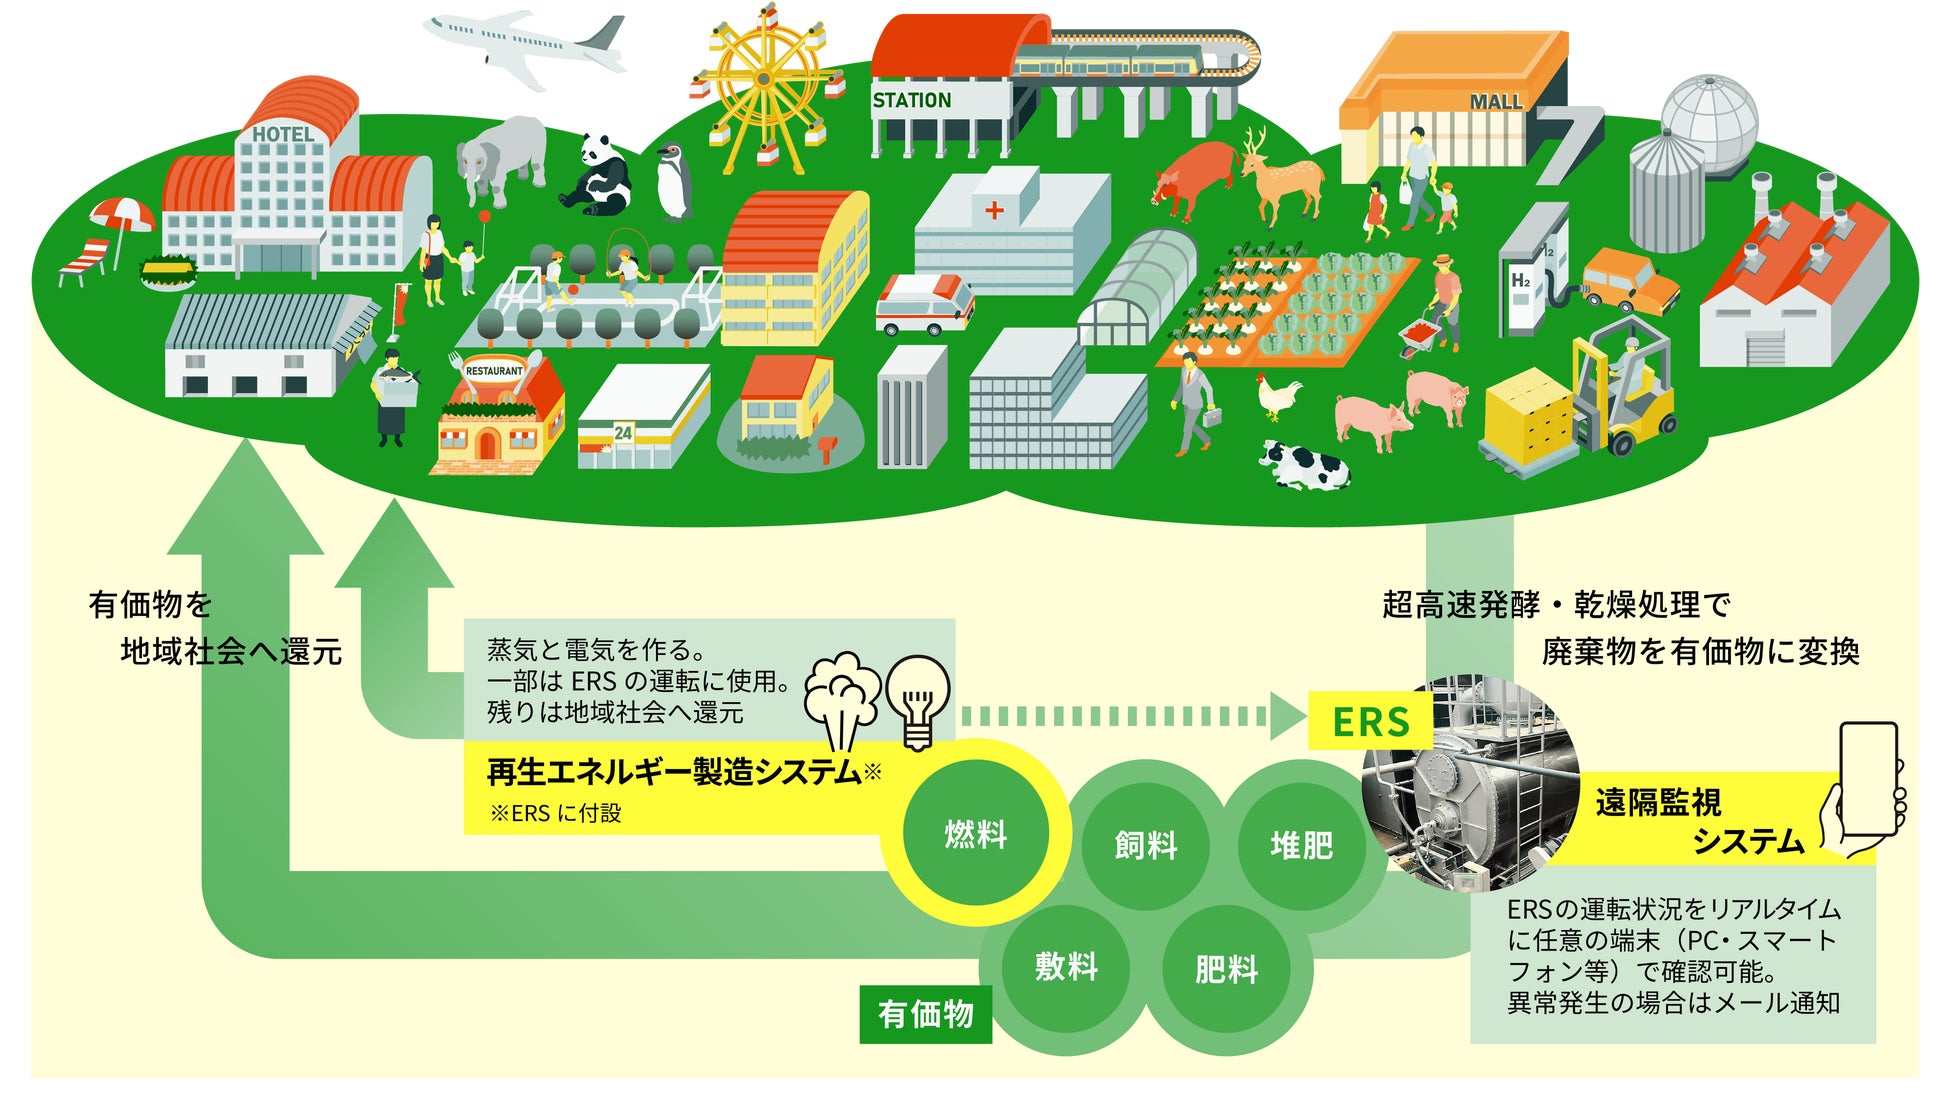 〈臭わない液肥〉 山口県で製造・散布実証、乳牛糞尿を高速発酵処理のサブ画像4